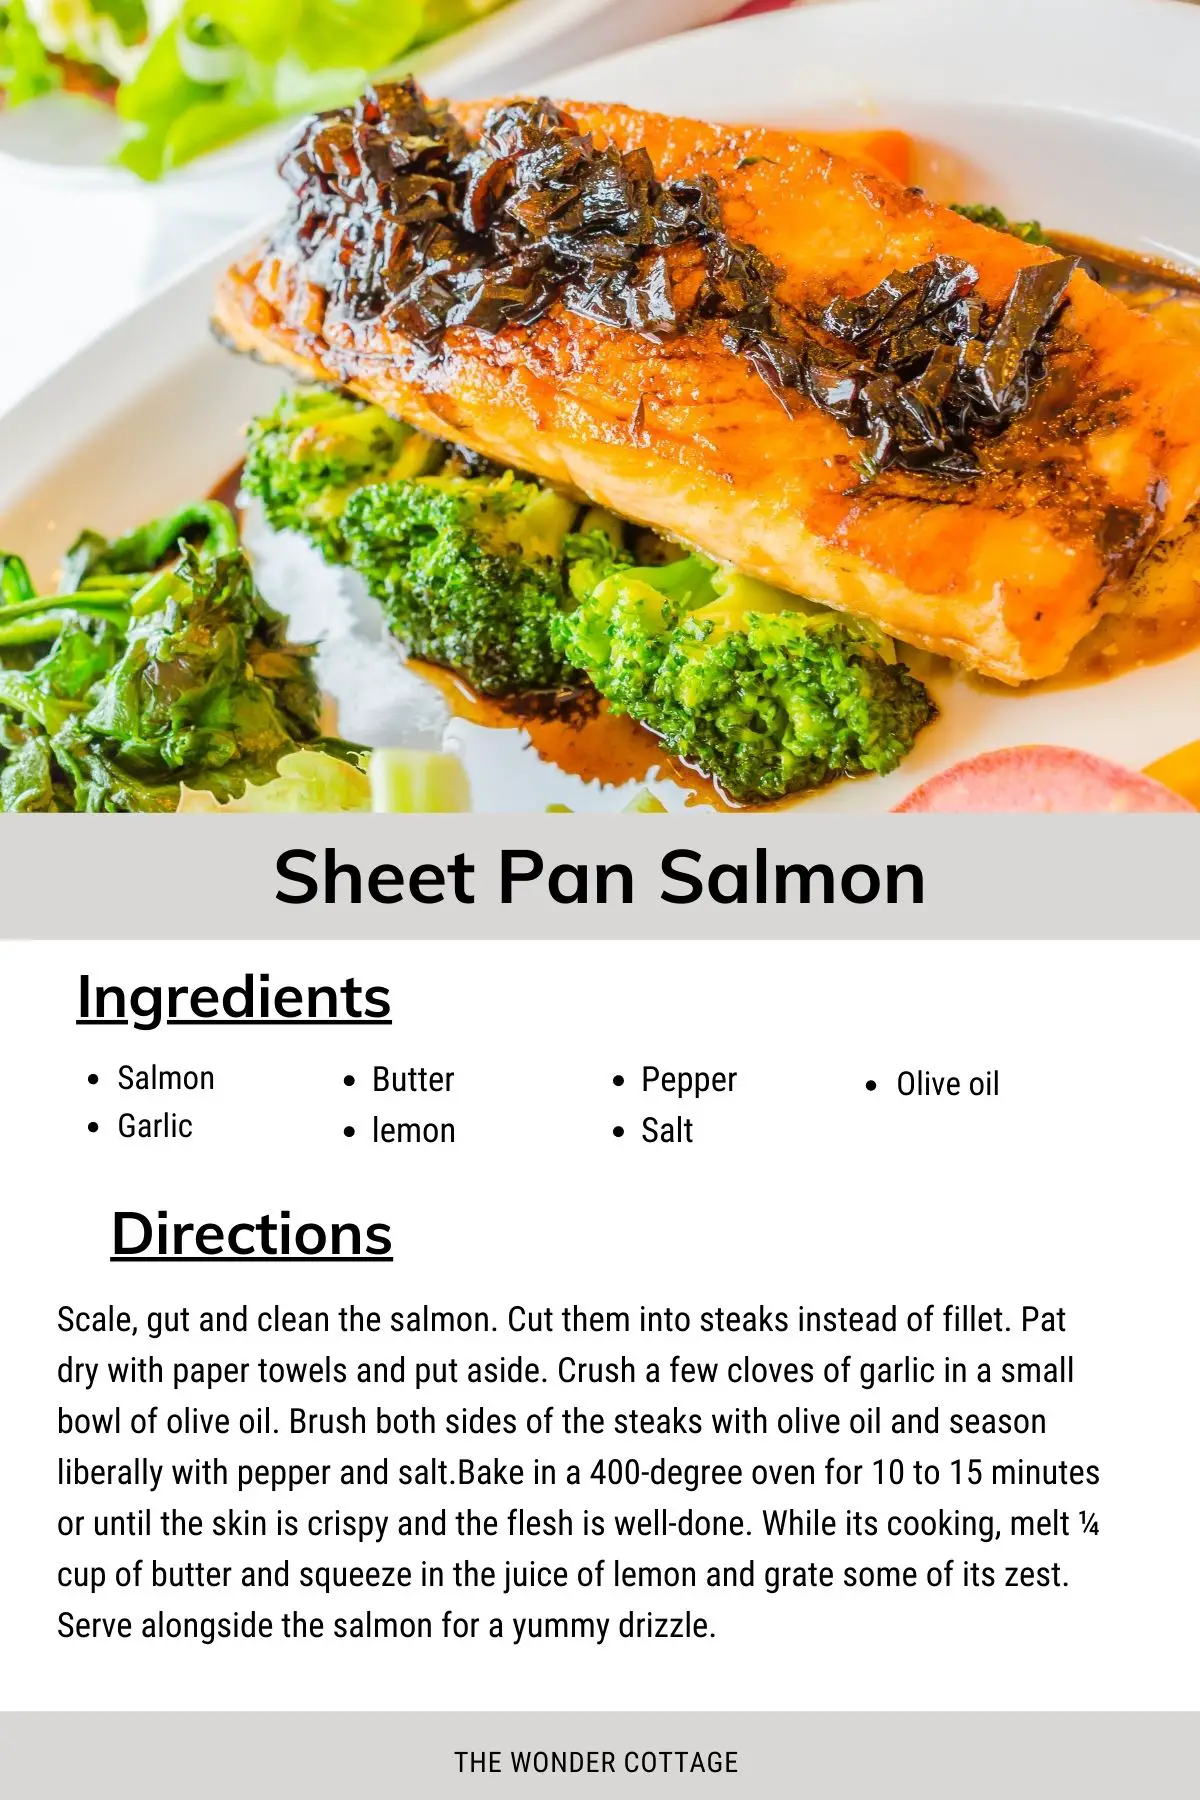 sheet pan salmon - fresh fish recipe